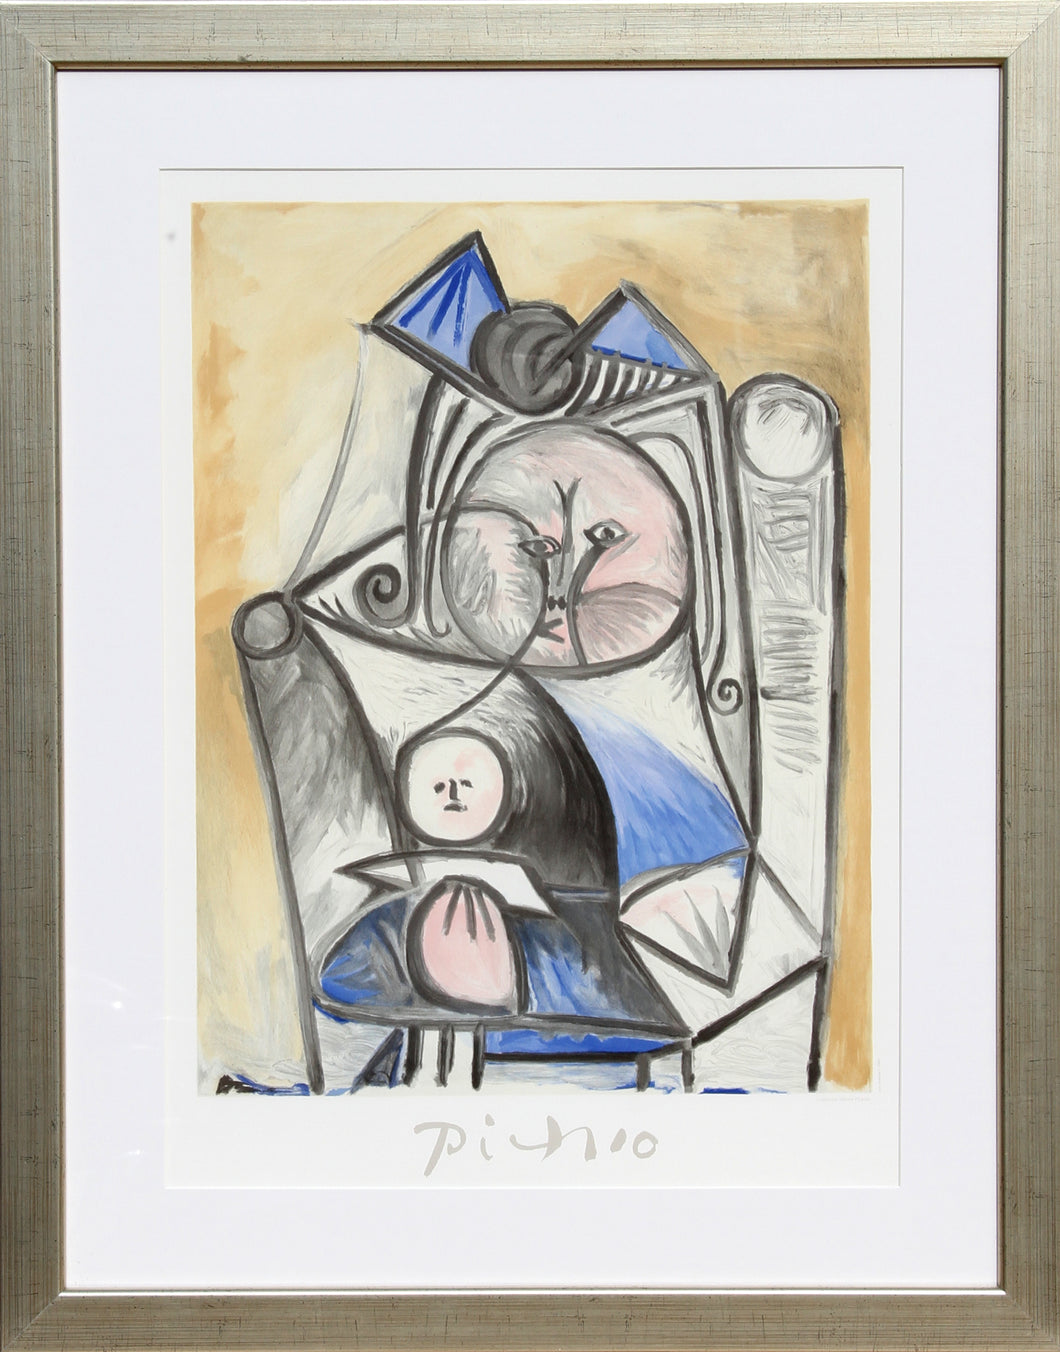 Pablo Picasso, Fillette a la Poupee, 36-3-k, Lithograph